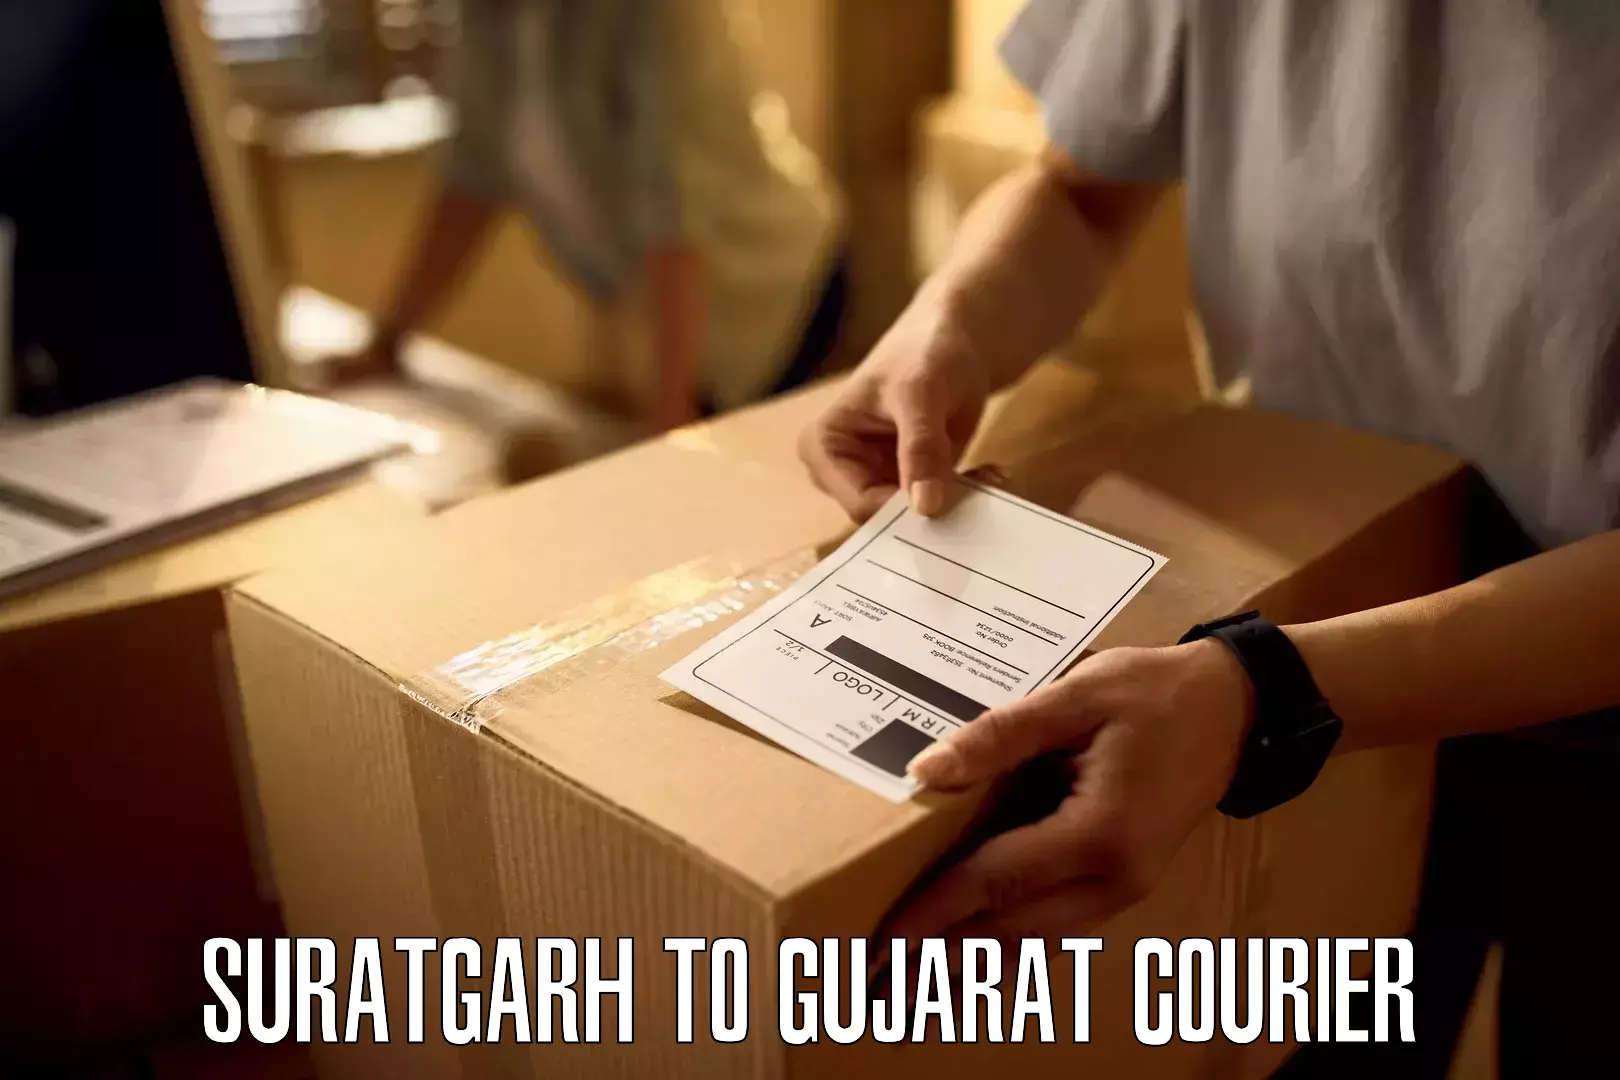 Professional courier services Suratgarh to Rapar